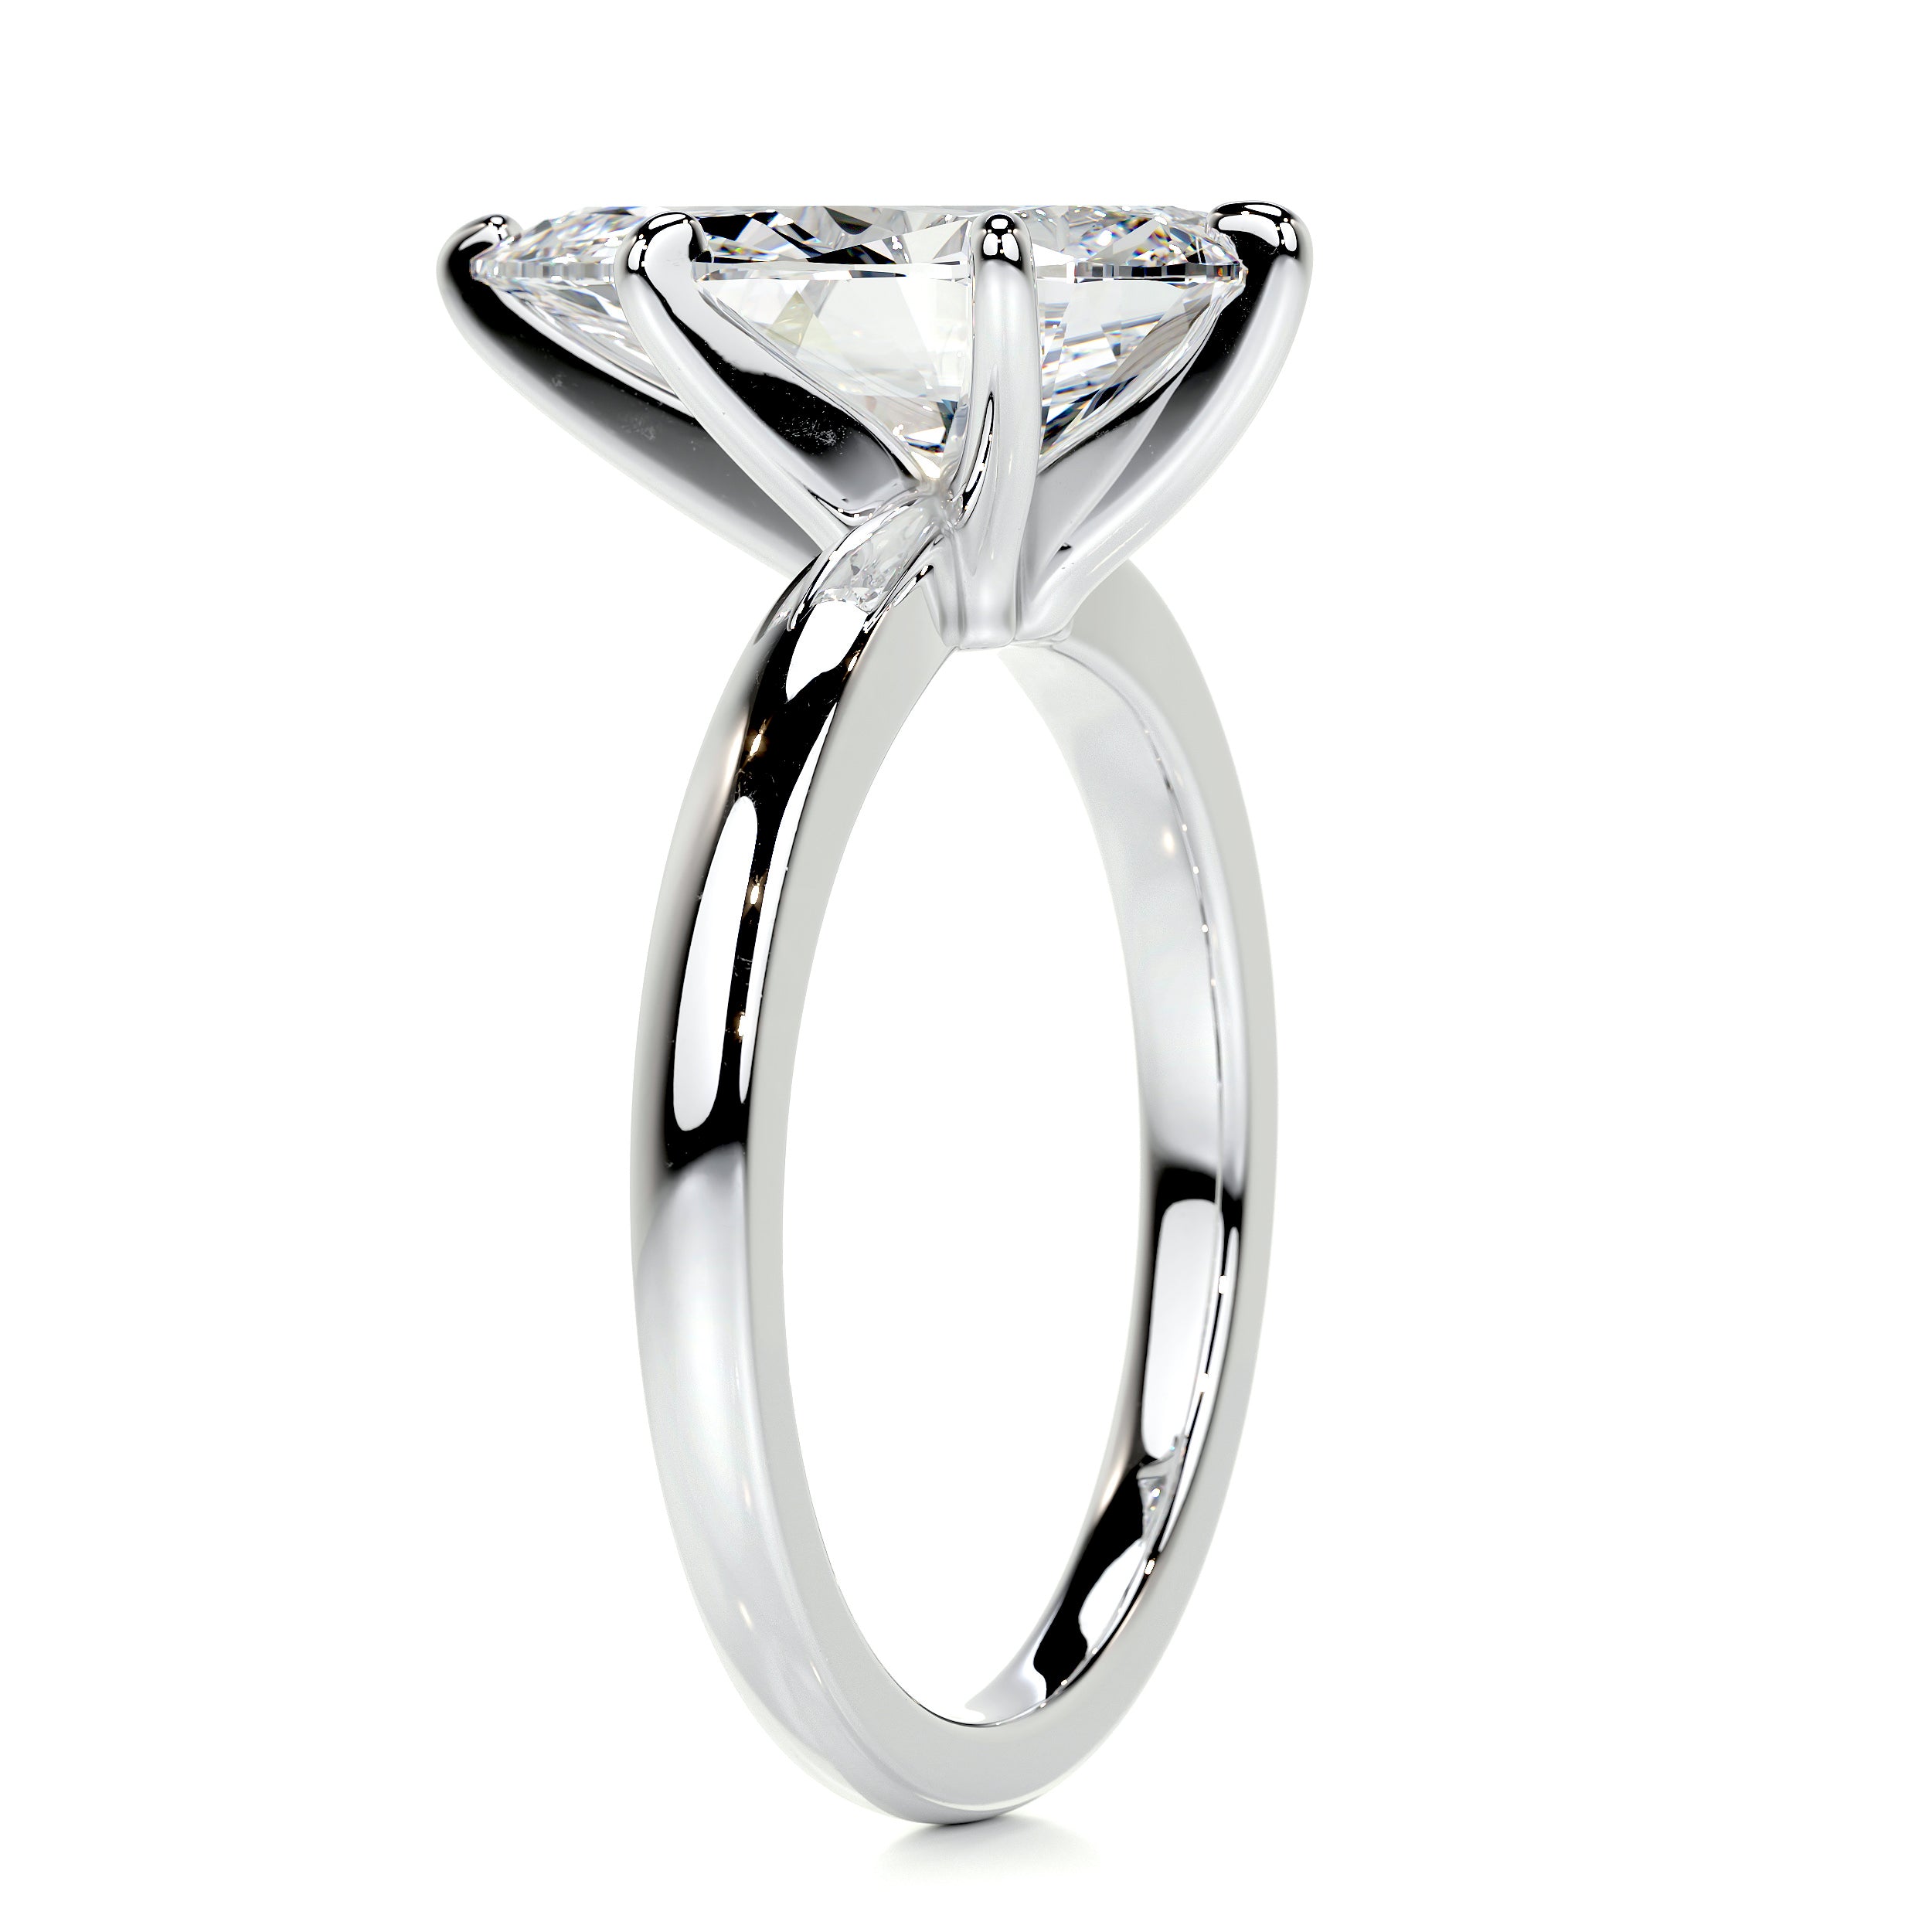 Adaline Diamond Engagement Ring   (5 Carat) -Platinum